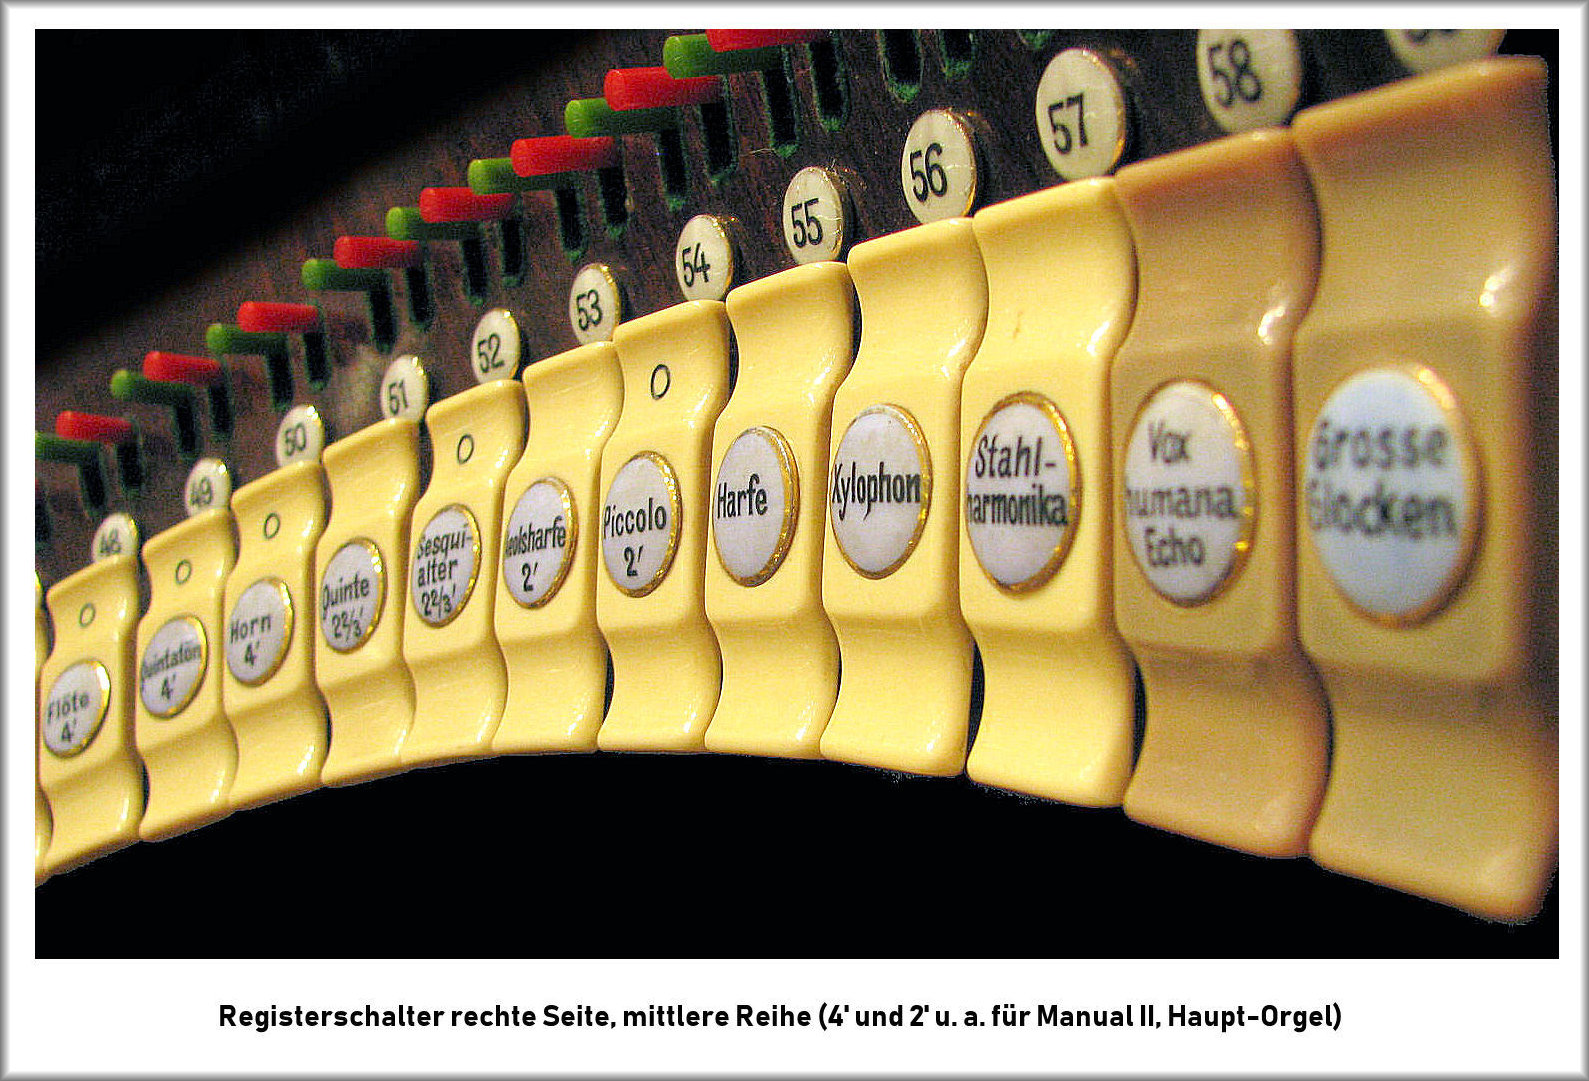 Welte-Funkorgel - Registerschalter rechts mittlere Reihe.jpg